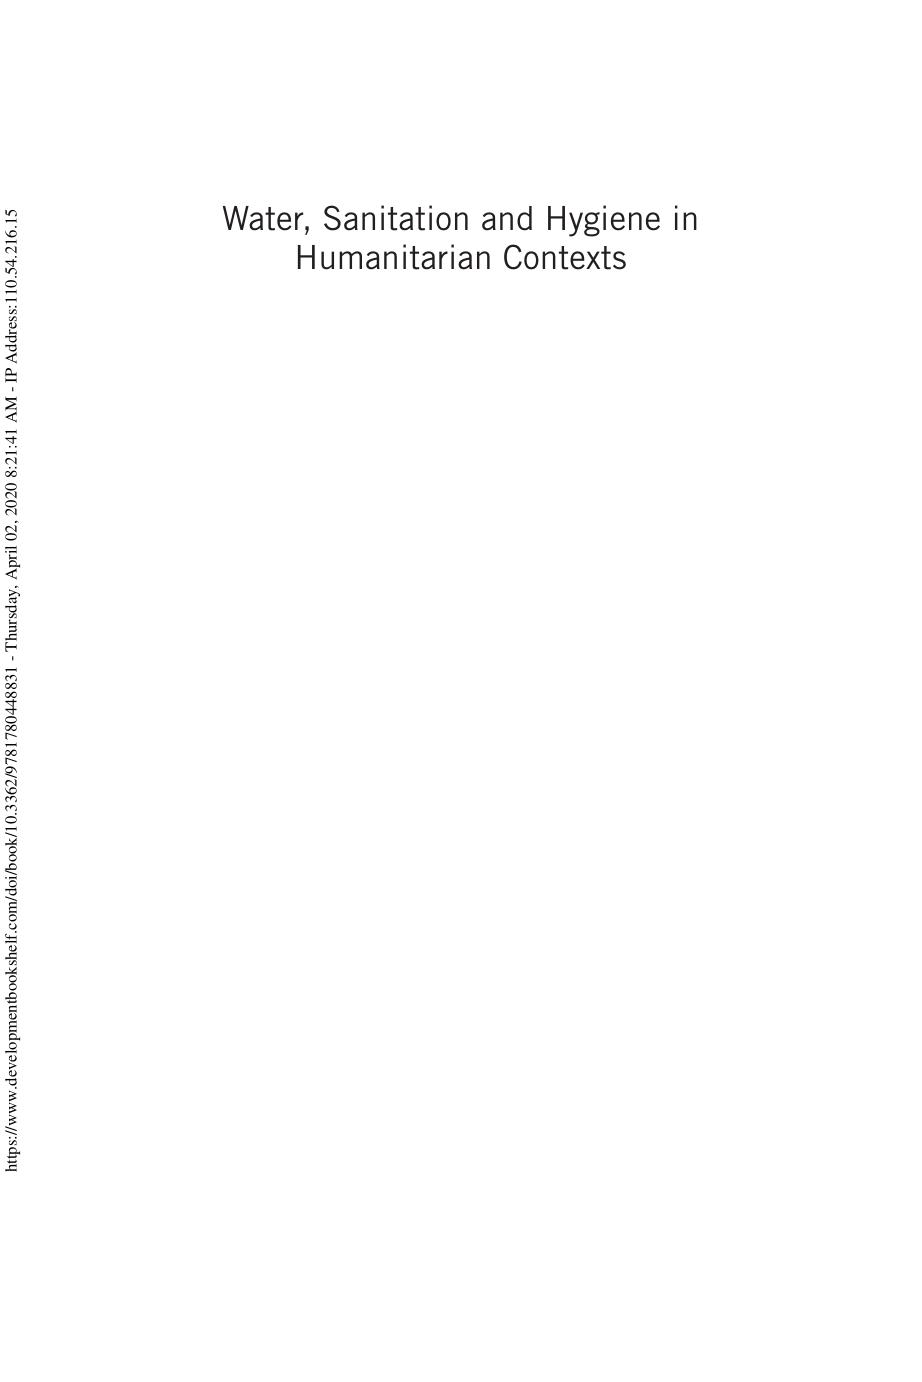 WASH in Humanitarian Contexts